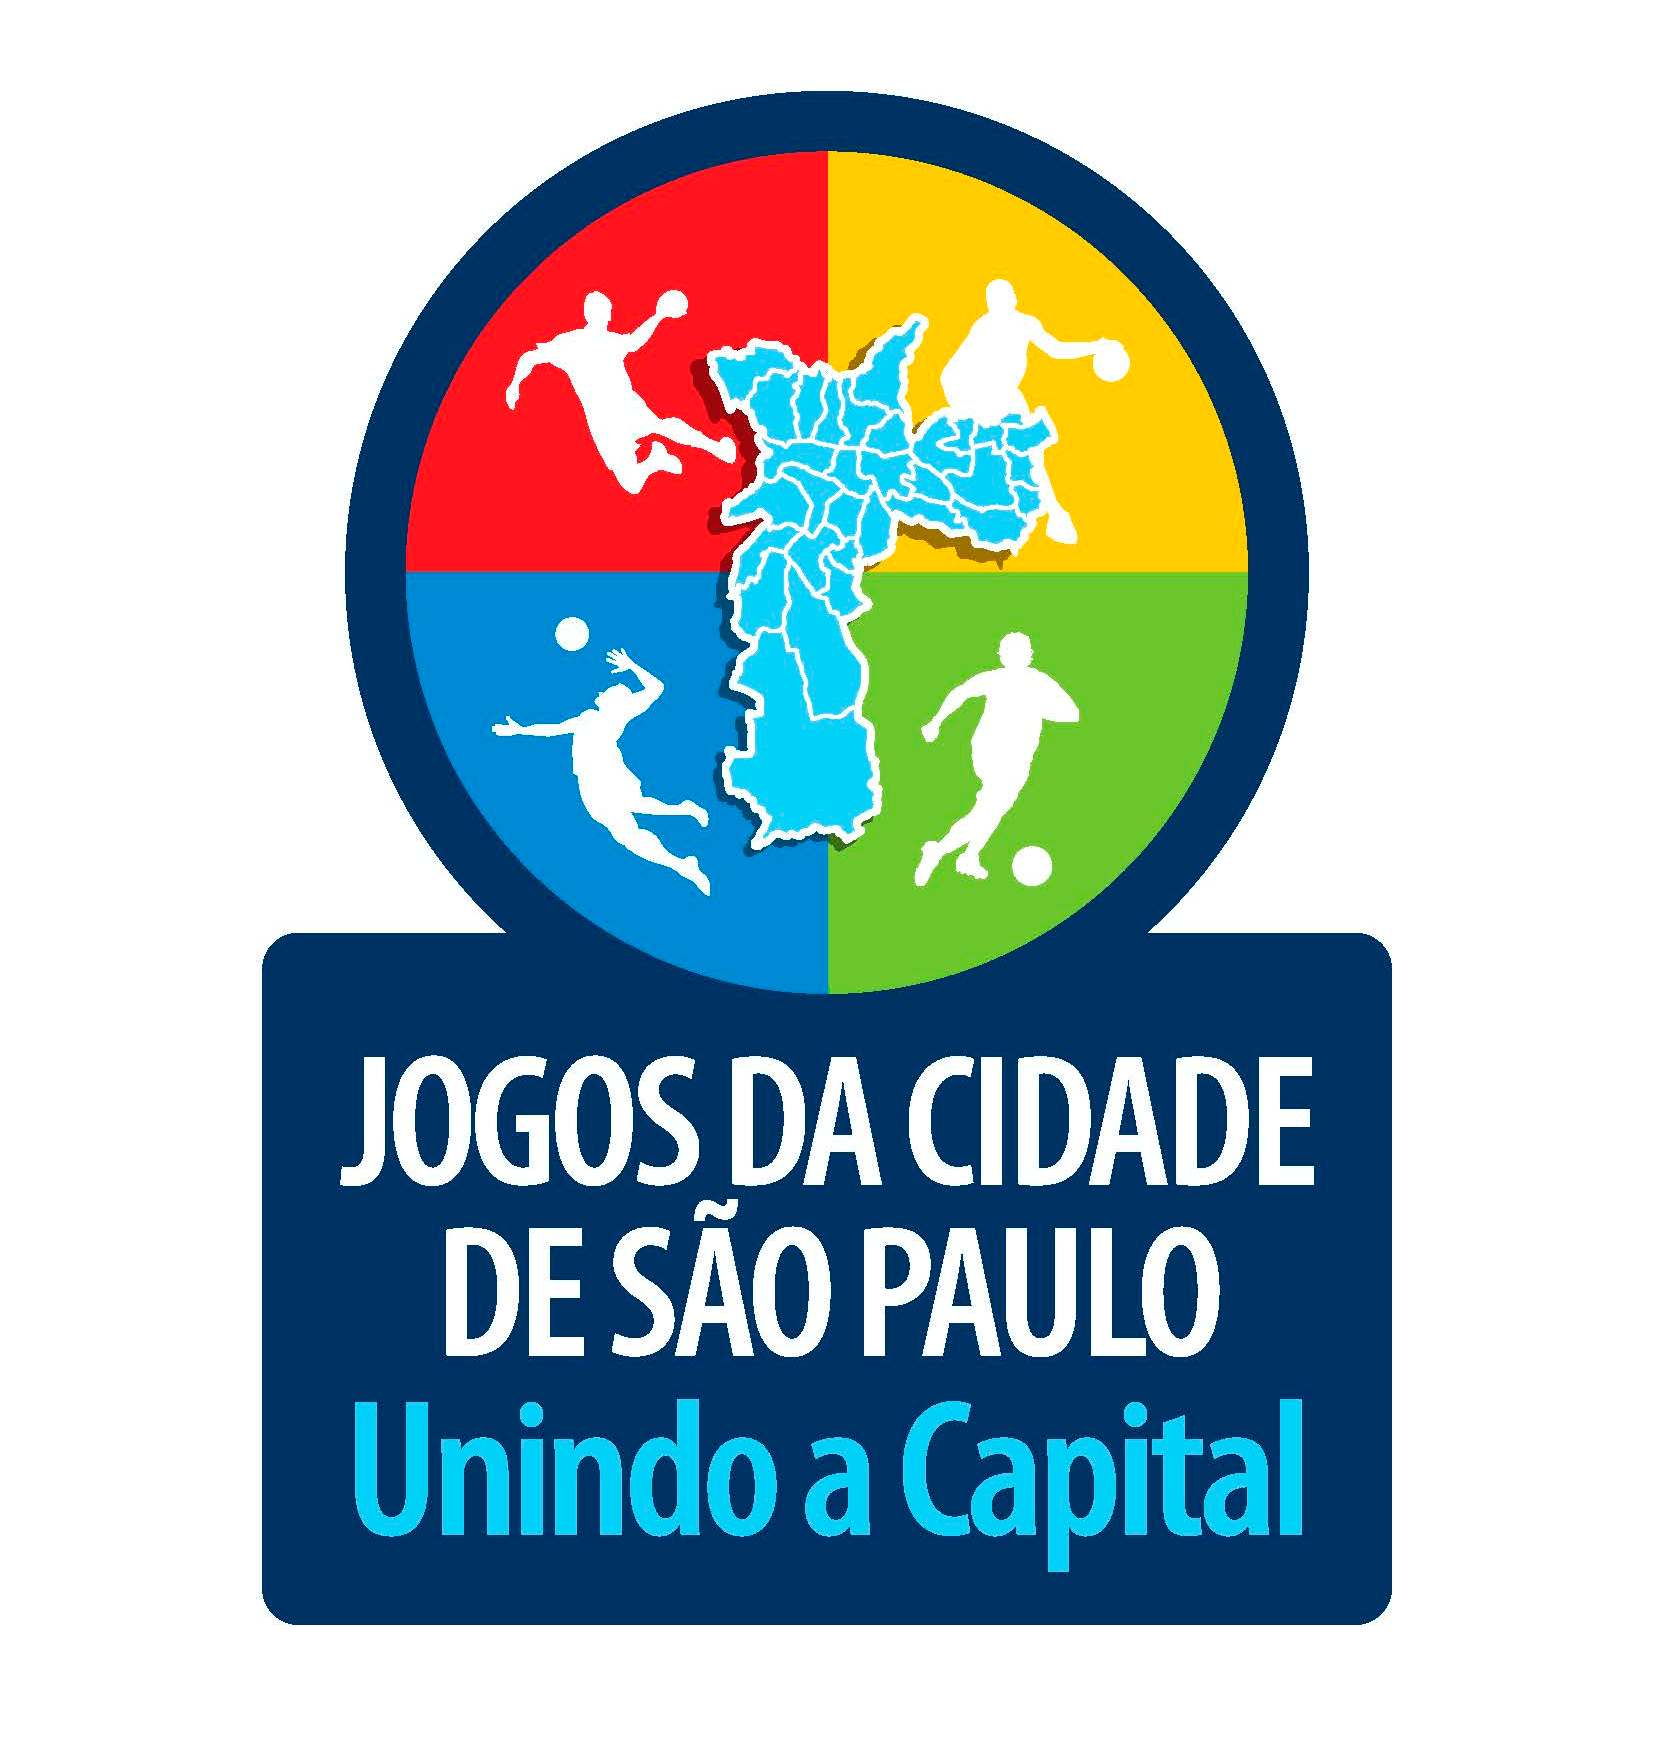 Imagem mostra logotipo dos Jogos da Cidade com o slogan: "Jogos da cidade de São paulo, unindo a capital"